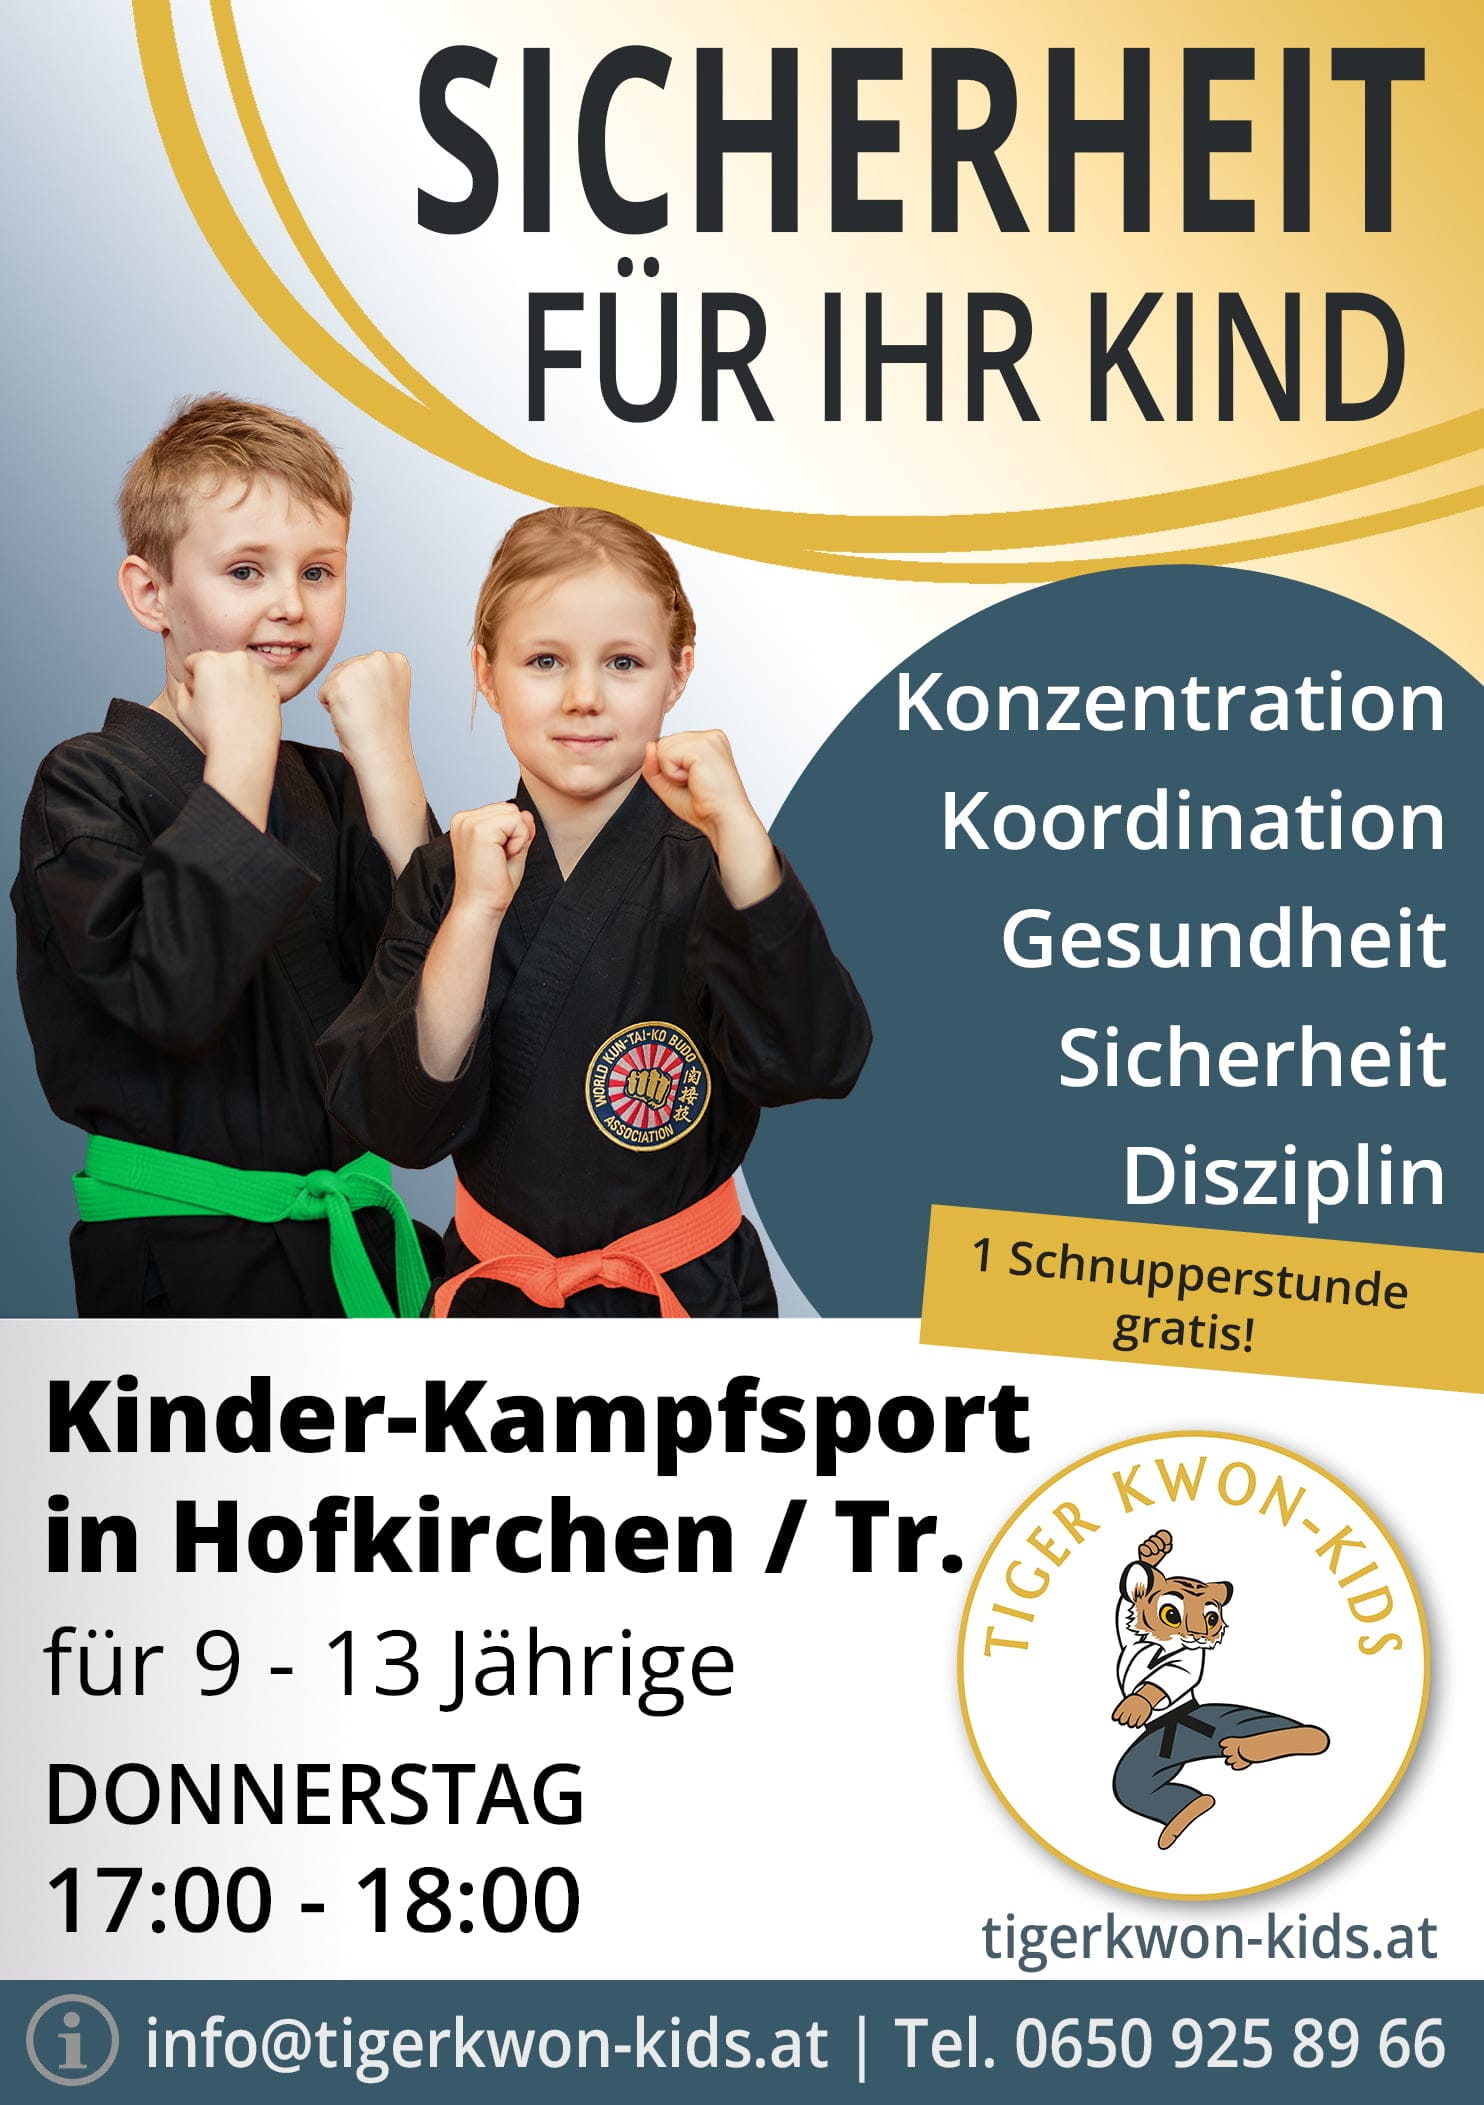 Flyer des Tiger Kwon - Kids Standorts in Hofkirchen an der Trattnach mit Informationen zu Trainingsort und -zeit, illustriert durch fröhliche Jungen und Mädchen.